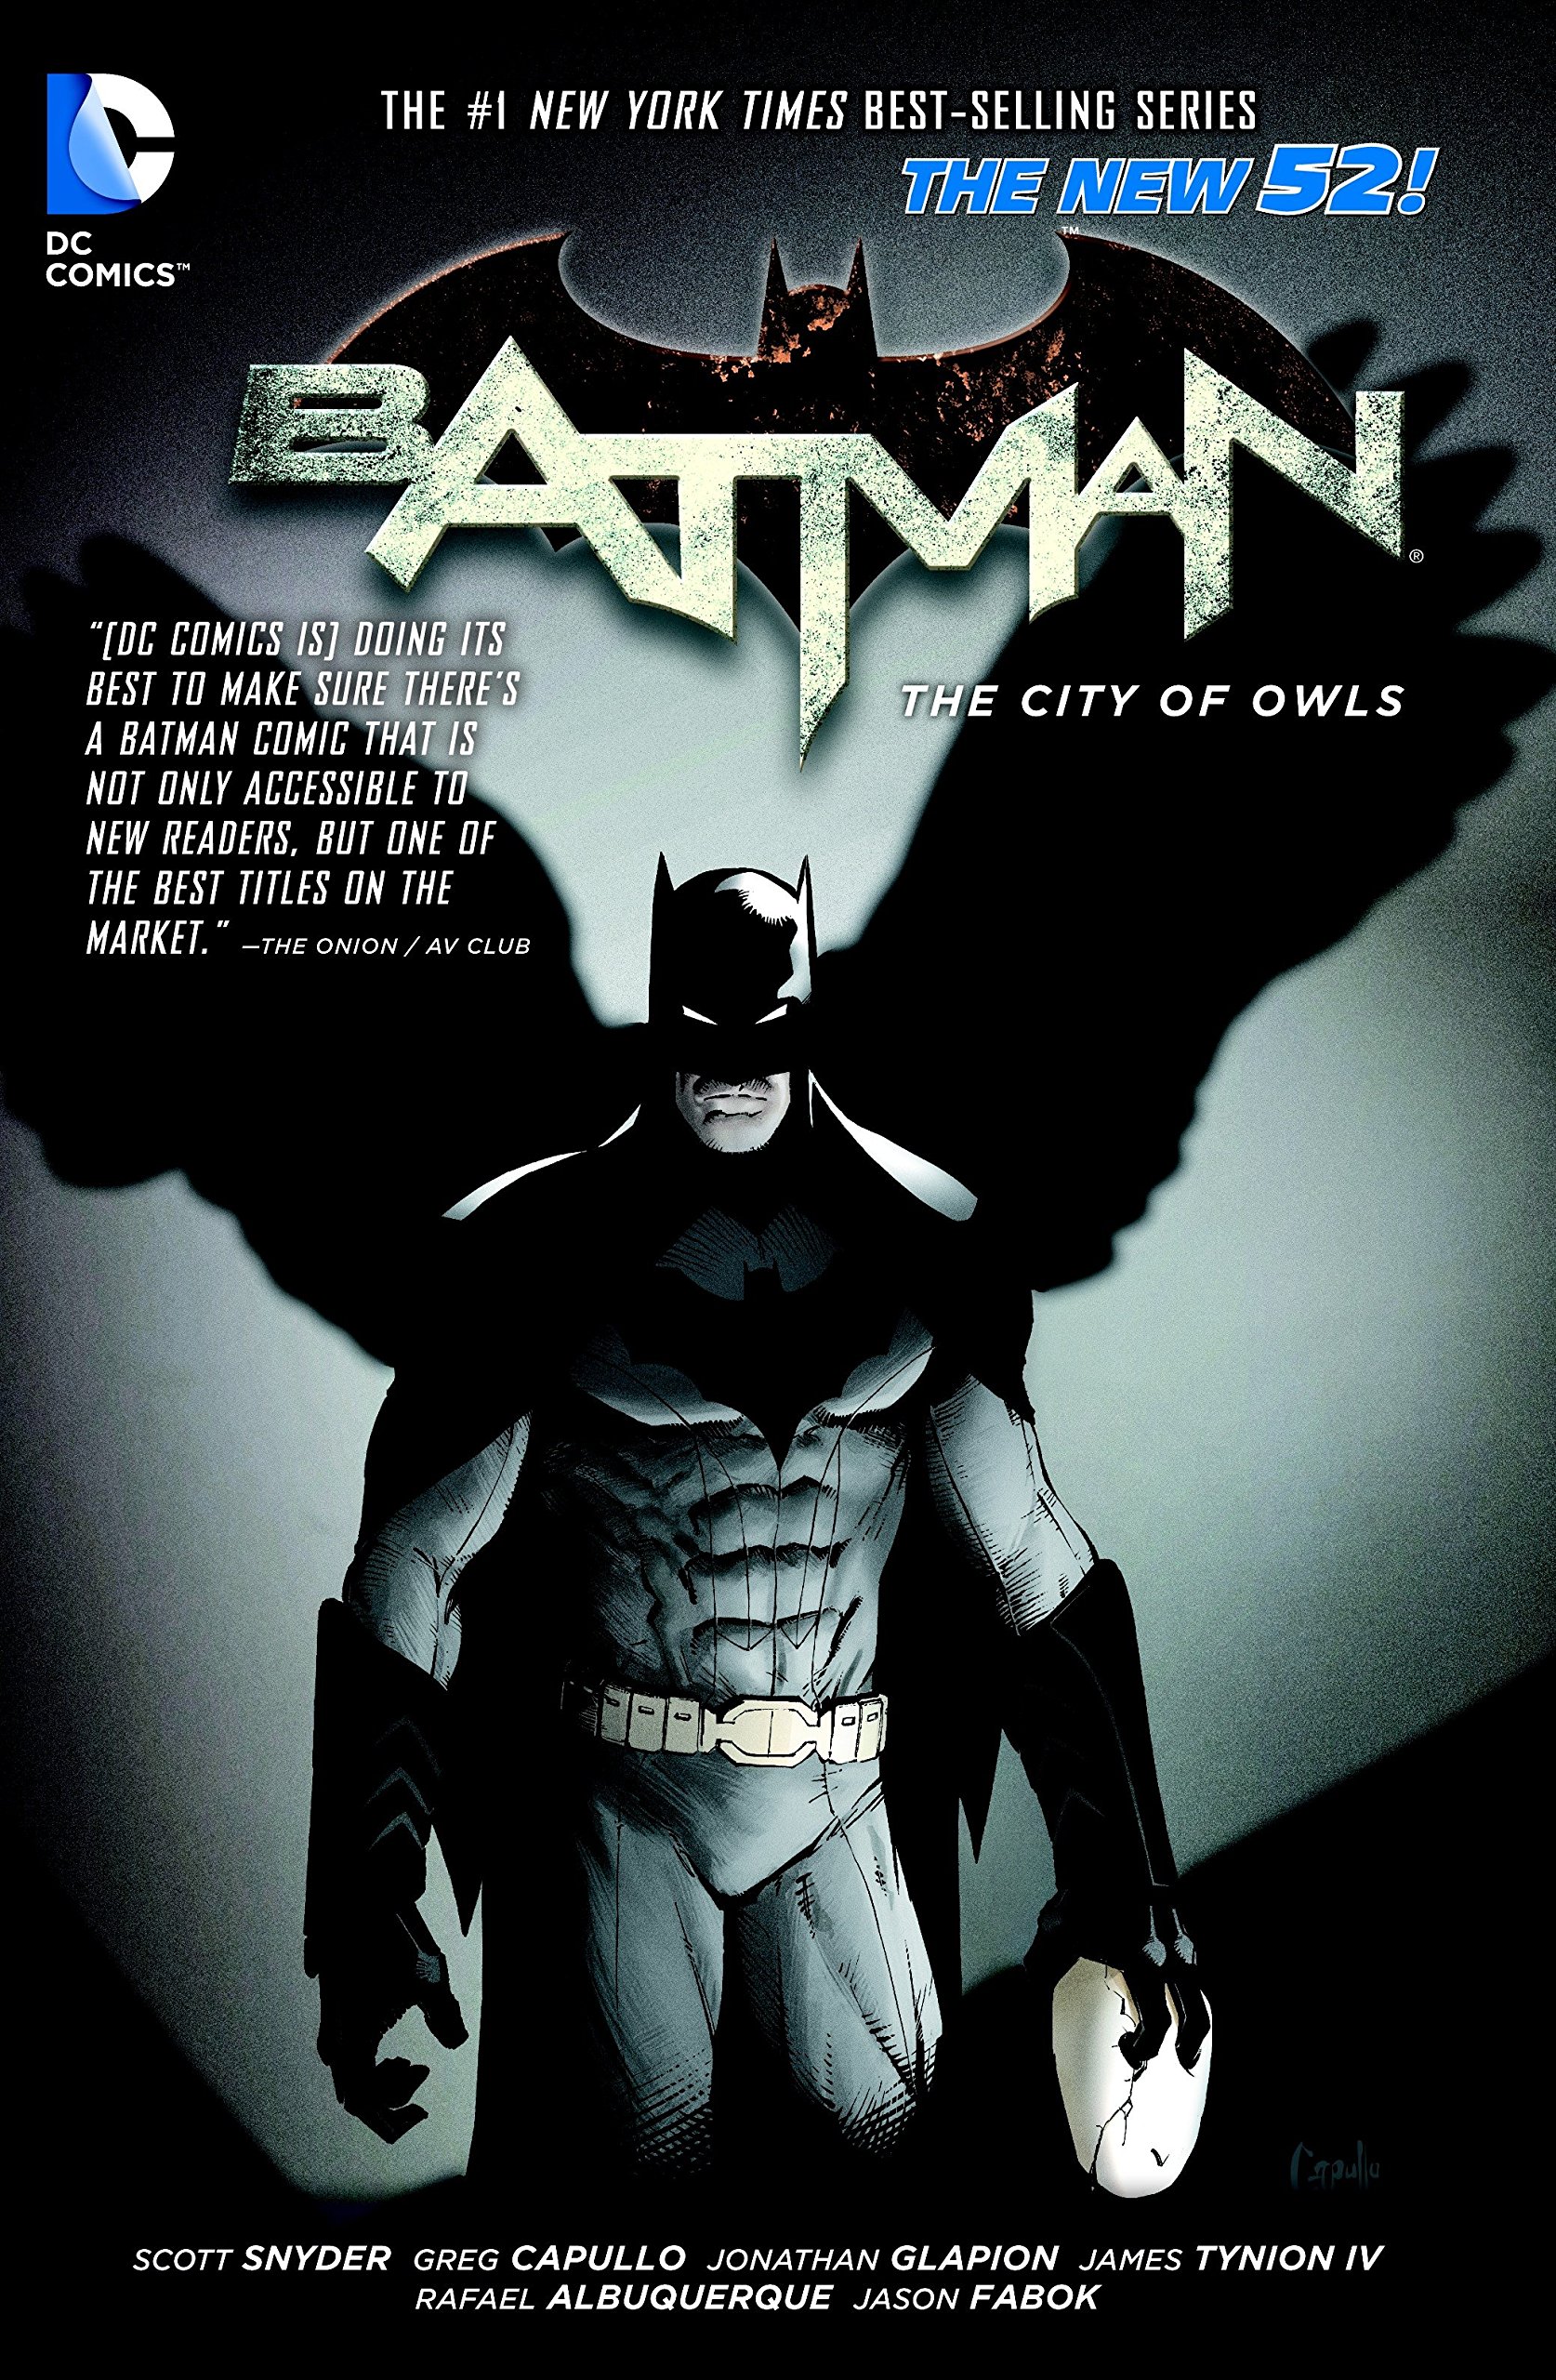 Mua Batman Volume 2: The City of Owls TP (The New 52) trên Amazon Anh chính  hãng 2023 | Giaonhan247